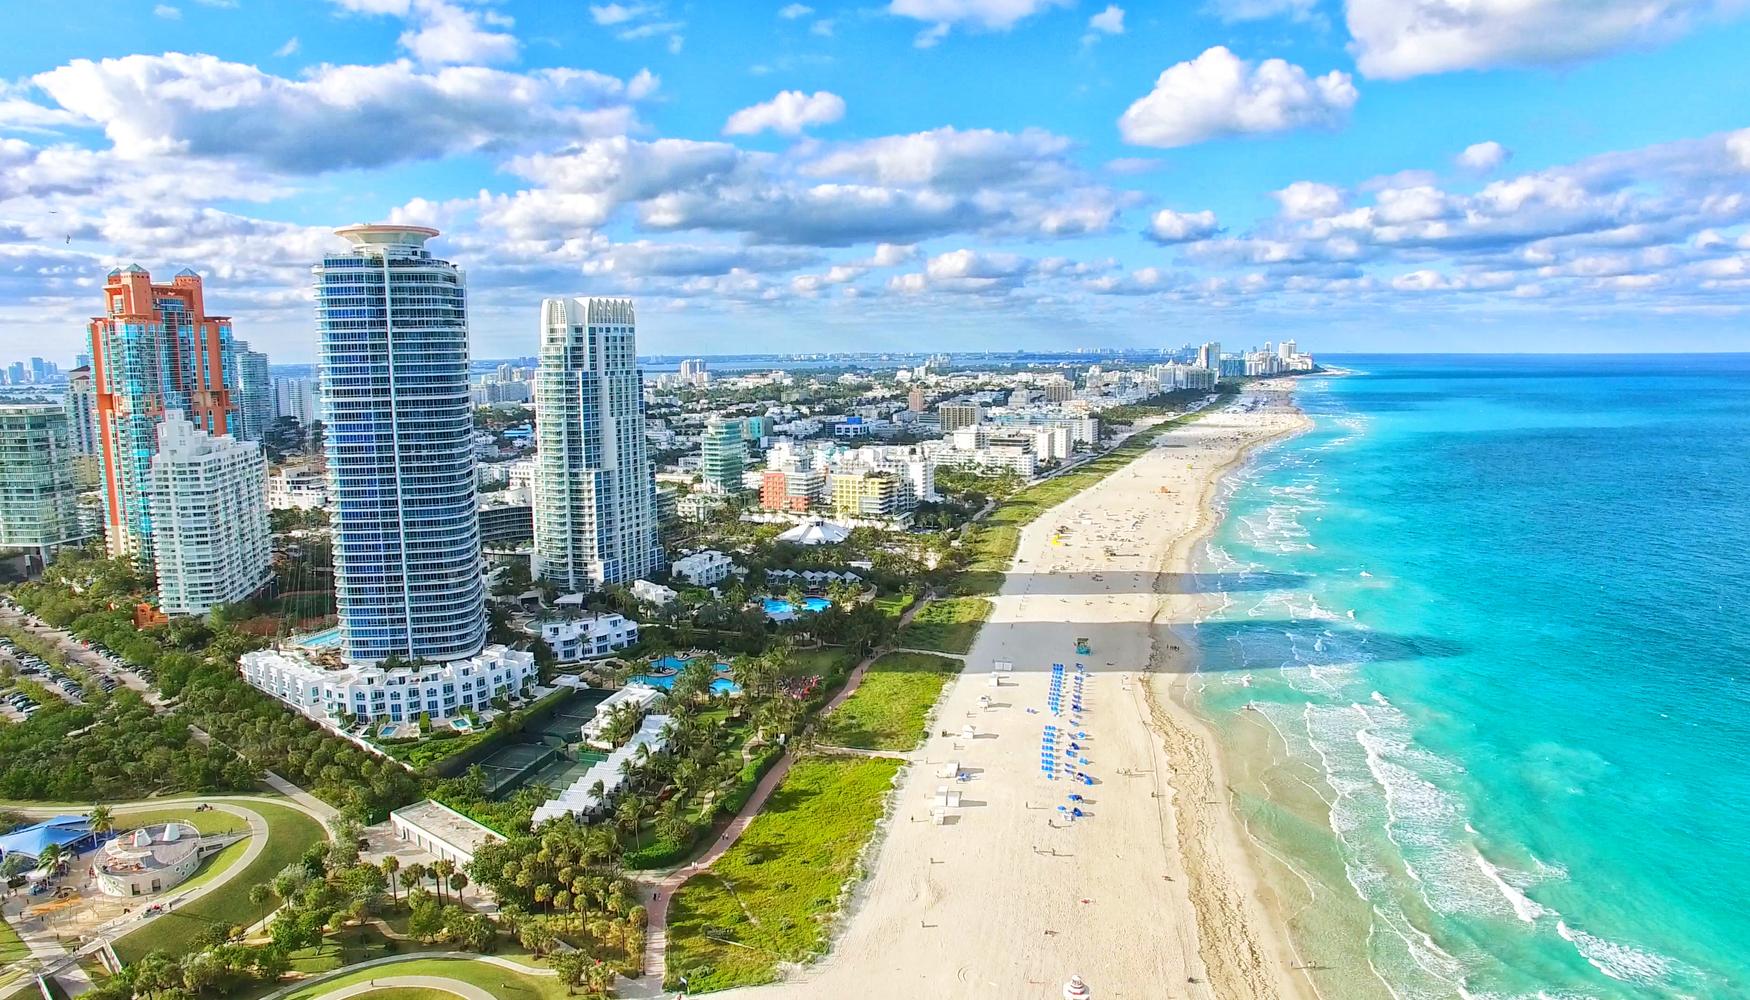 Miami Beach Paquetes de vacaciones desde $3,781 - Busca vuelo y hotel en KAYAK